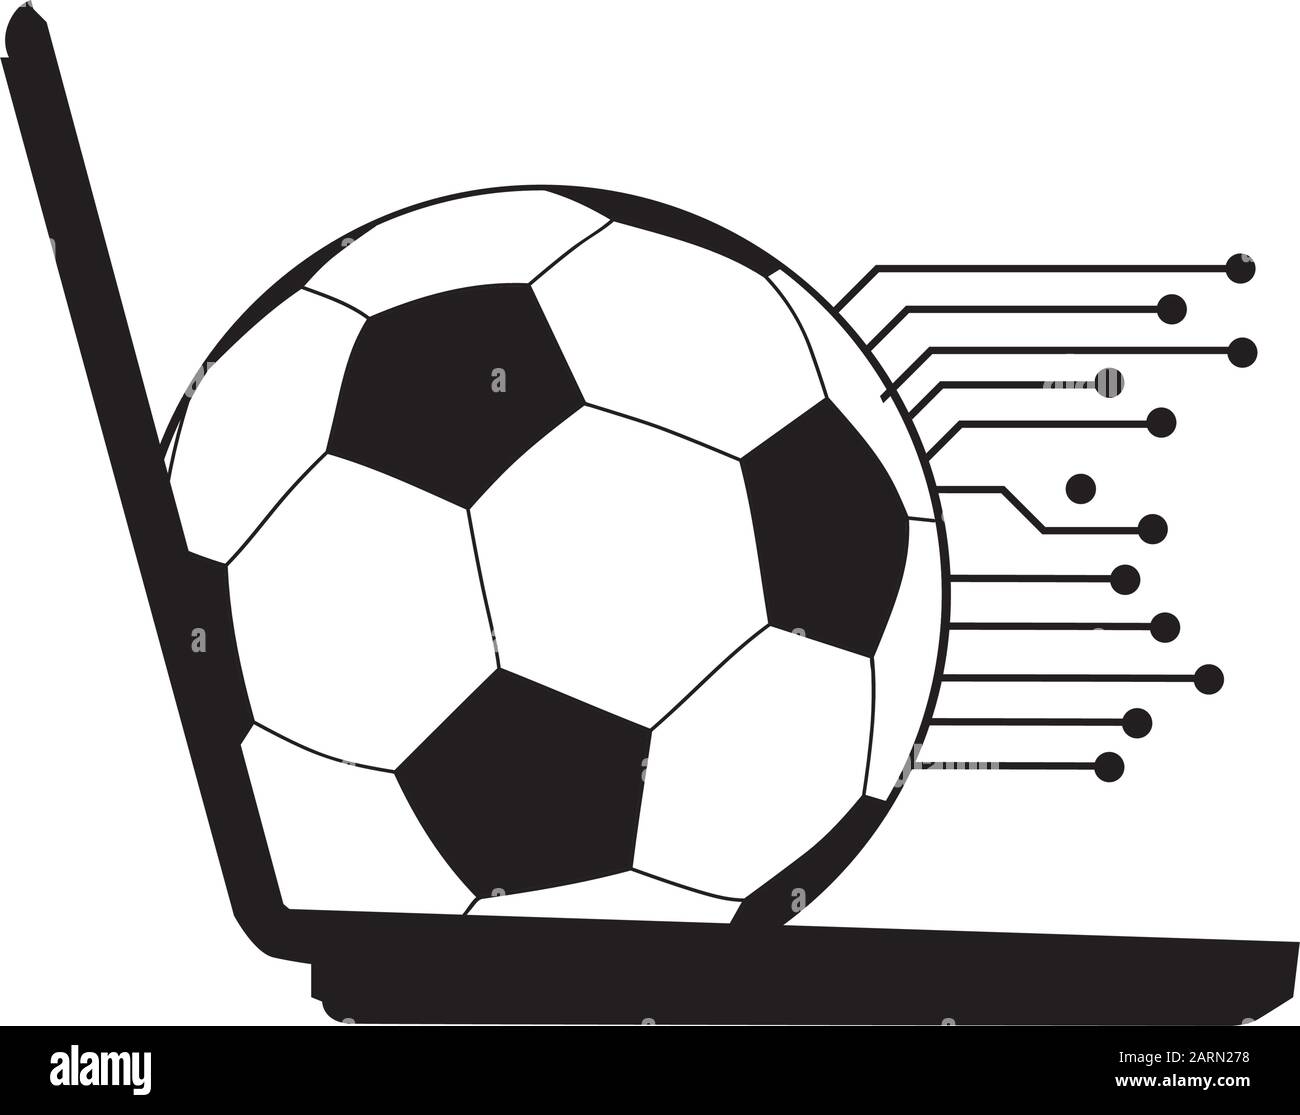 Fußball Brettspiel Ausgeschnittene Stockfotos und -bilder - Seite 3 - Alamy